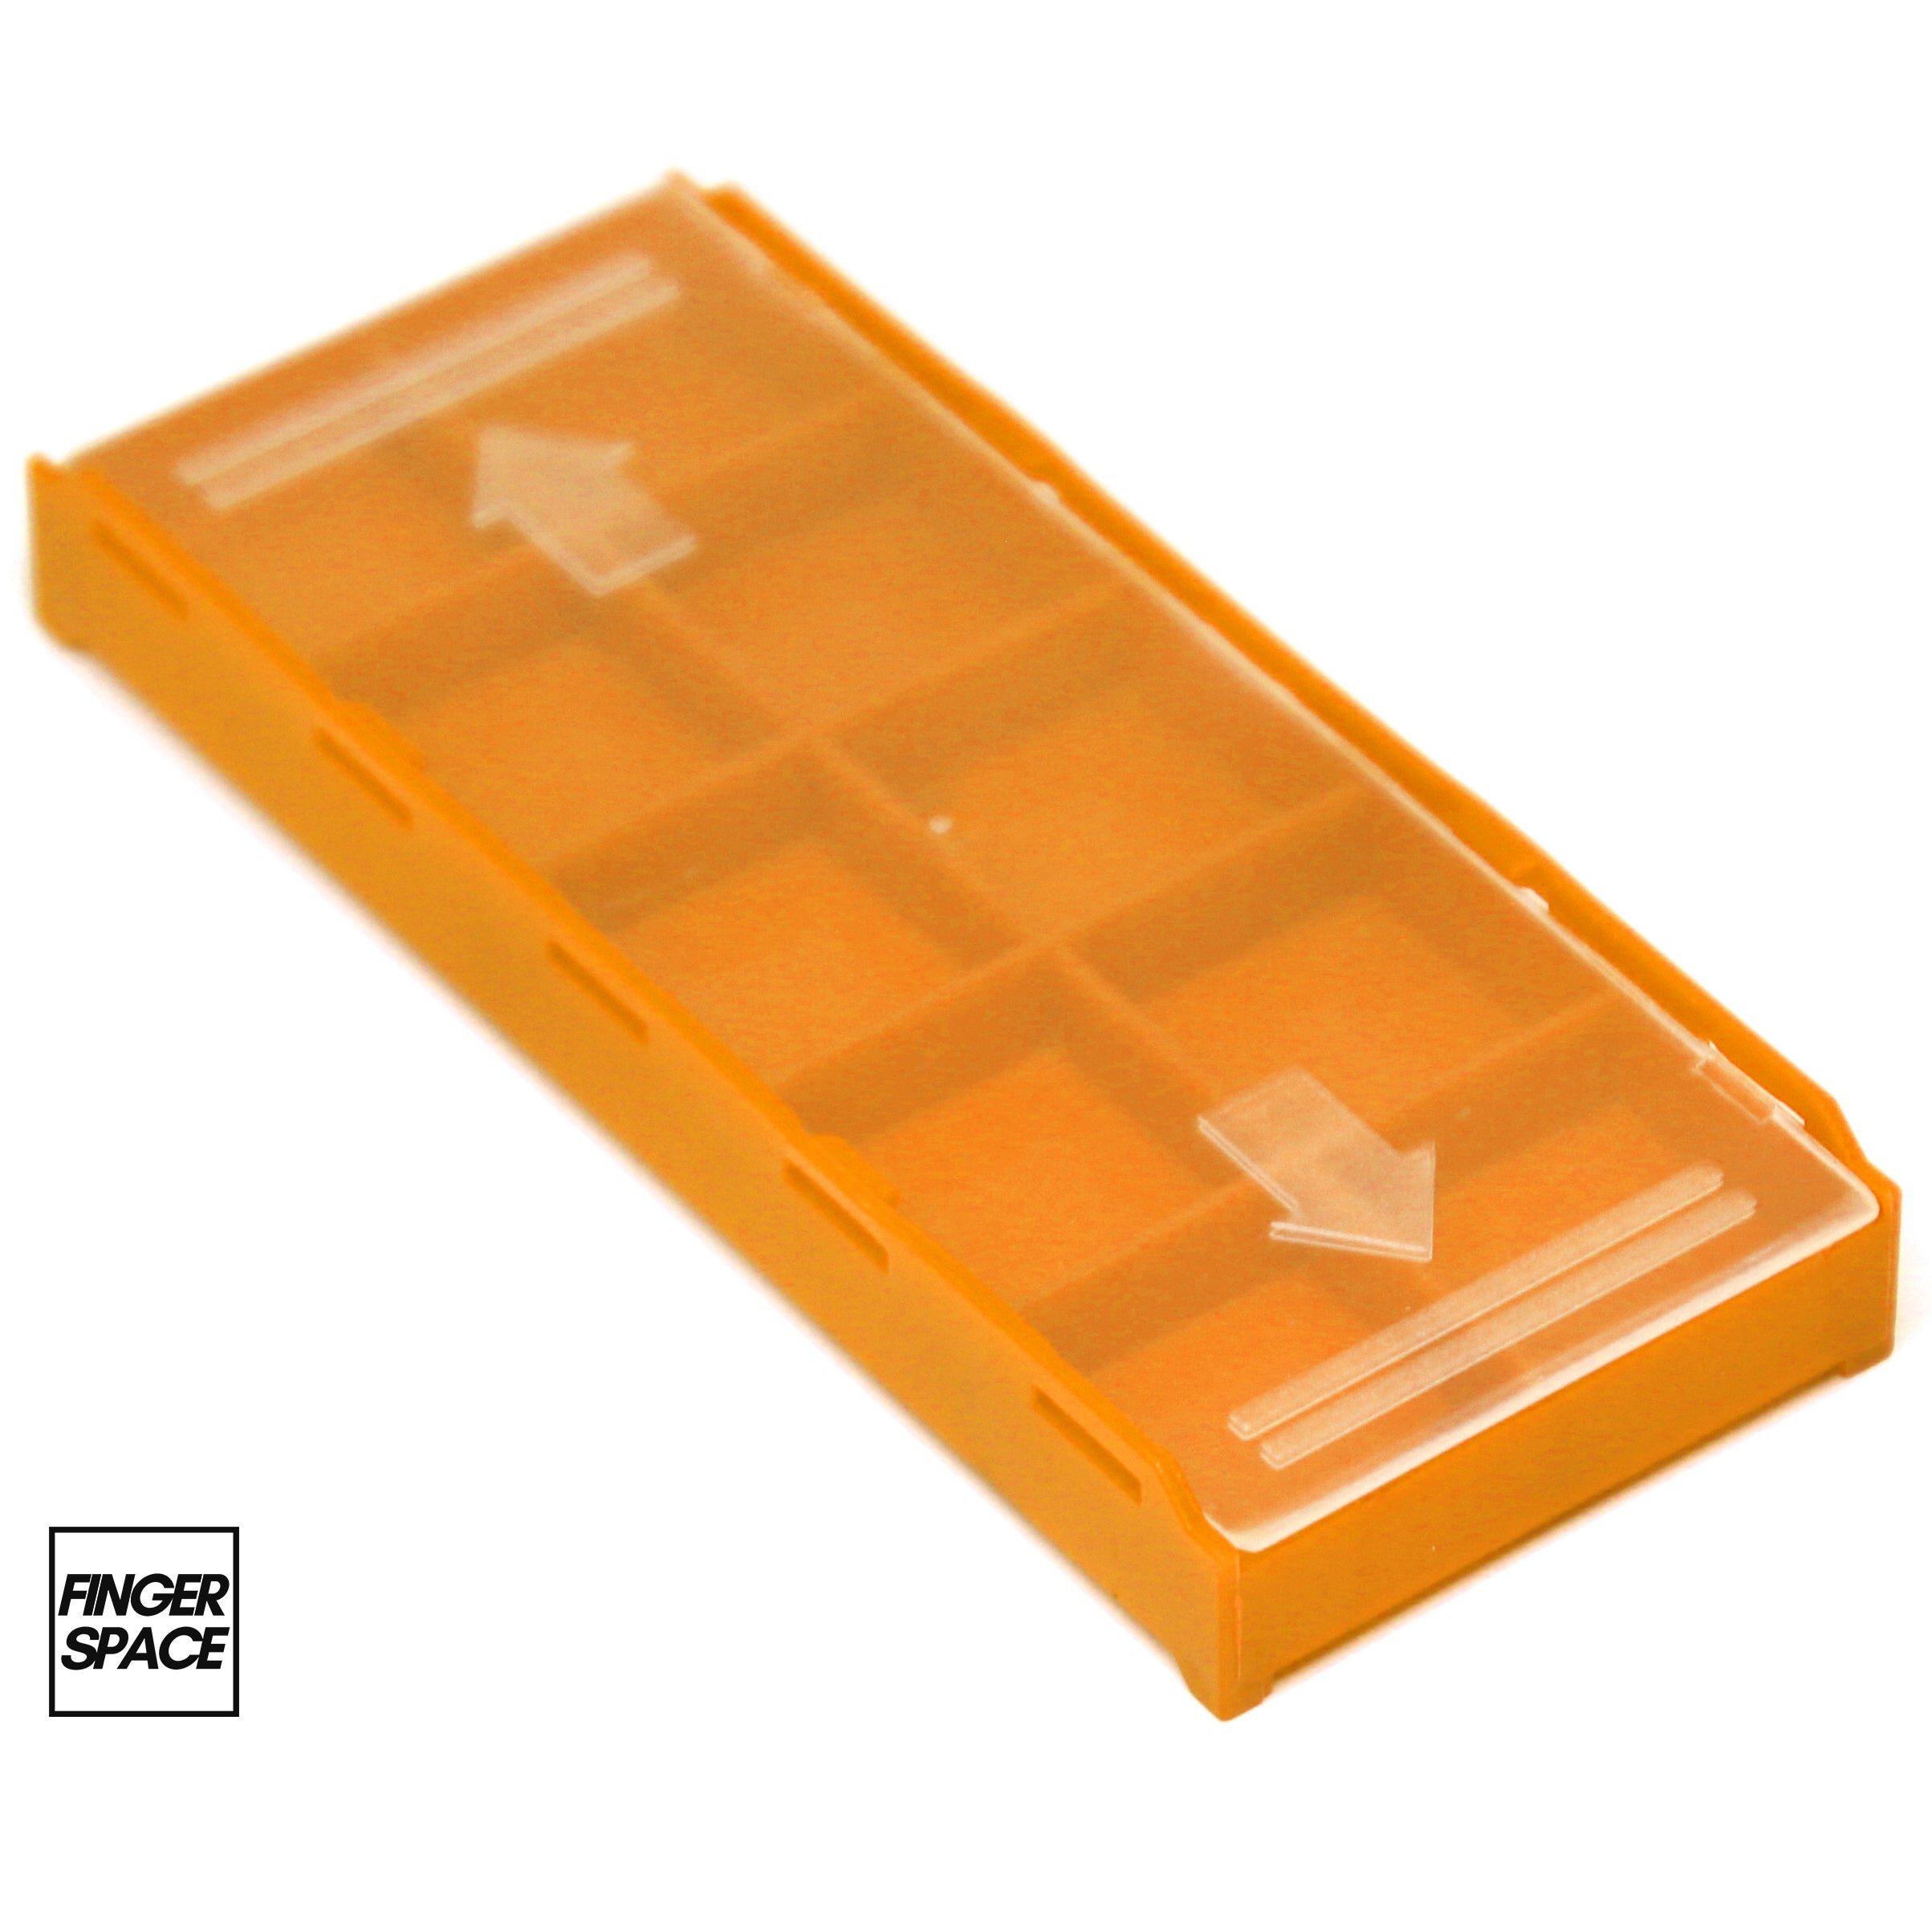 Tangerine Orange "Space Case" - Modular Stacking Storage Box